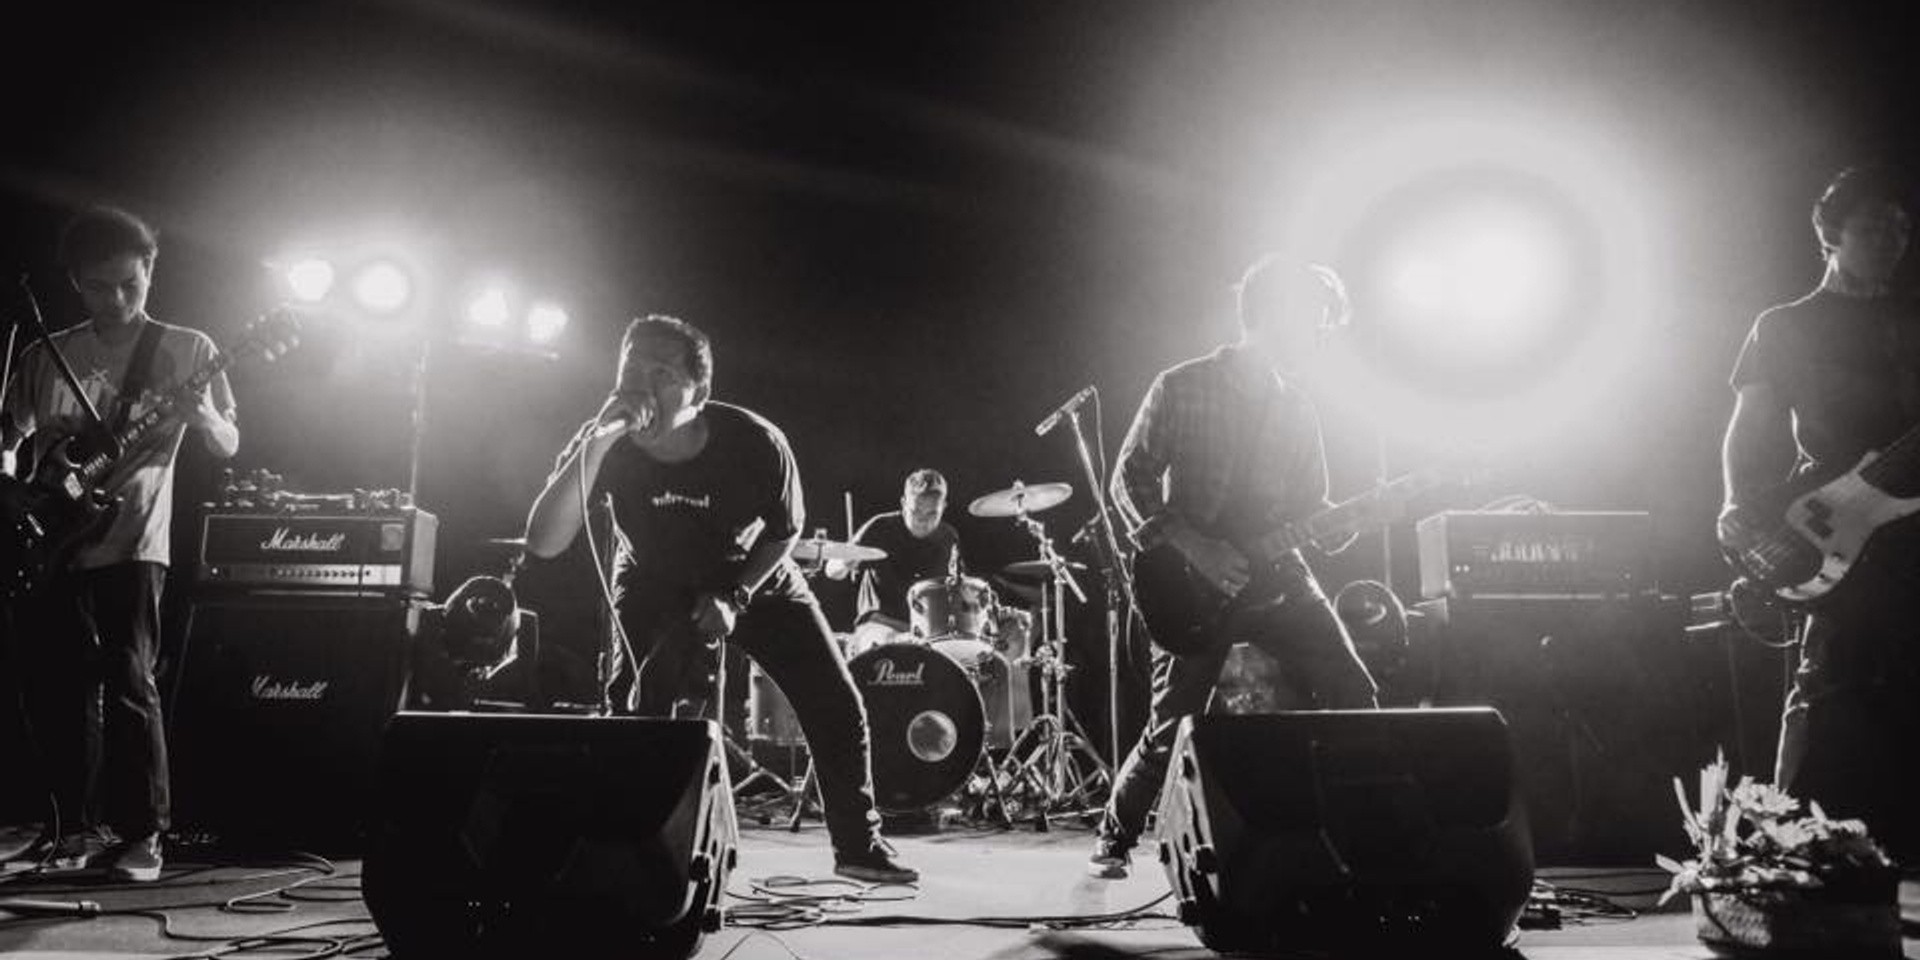 Bali-based hardcore punk unit Anolian release 'Truth Has Gone' EP — listen